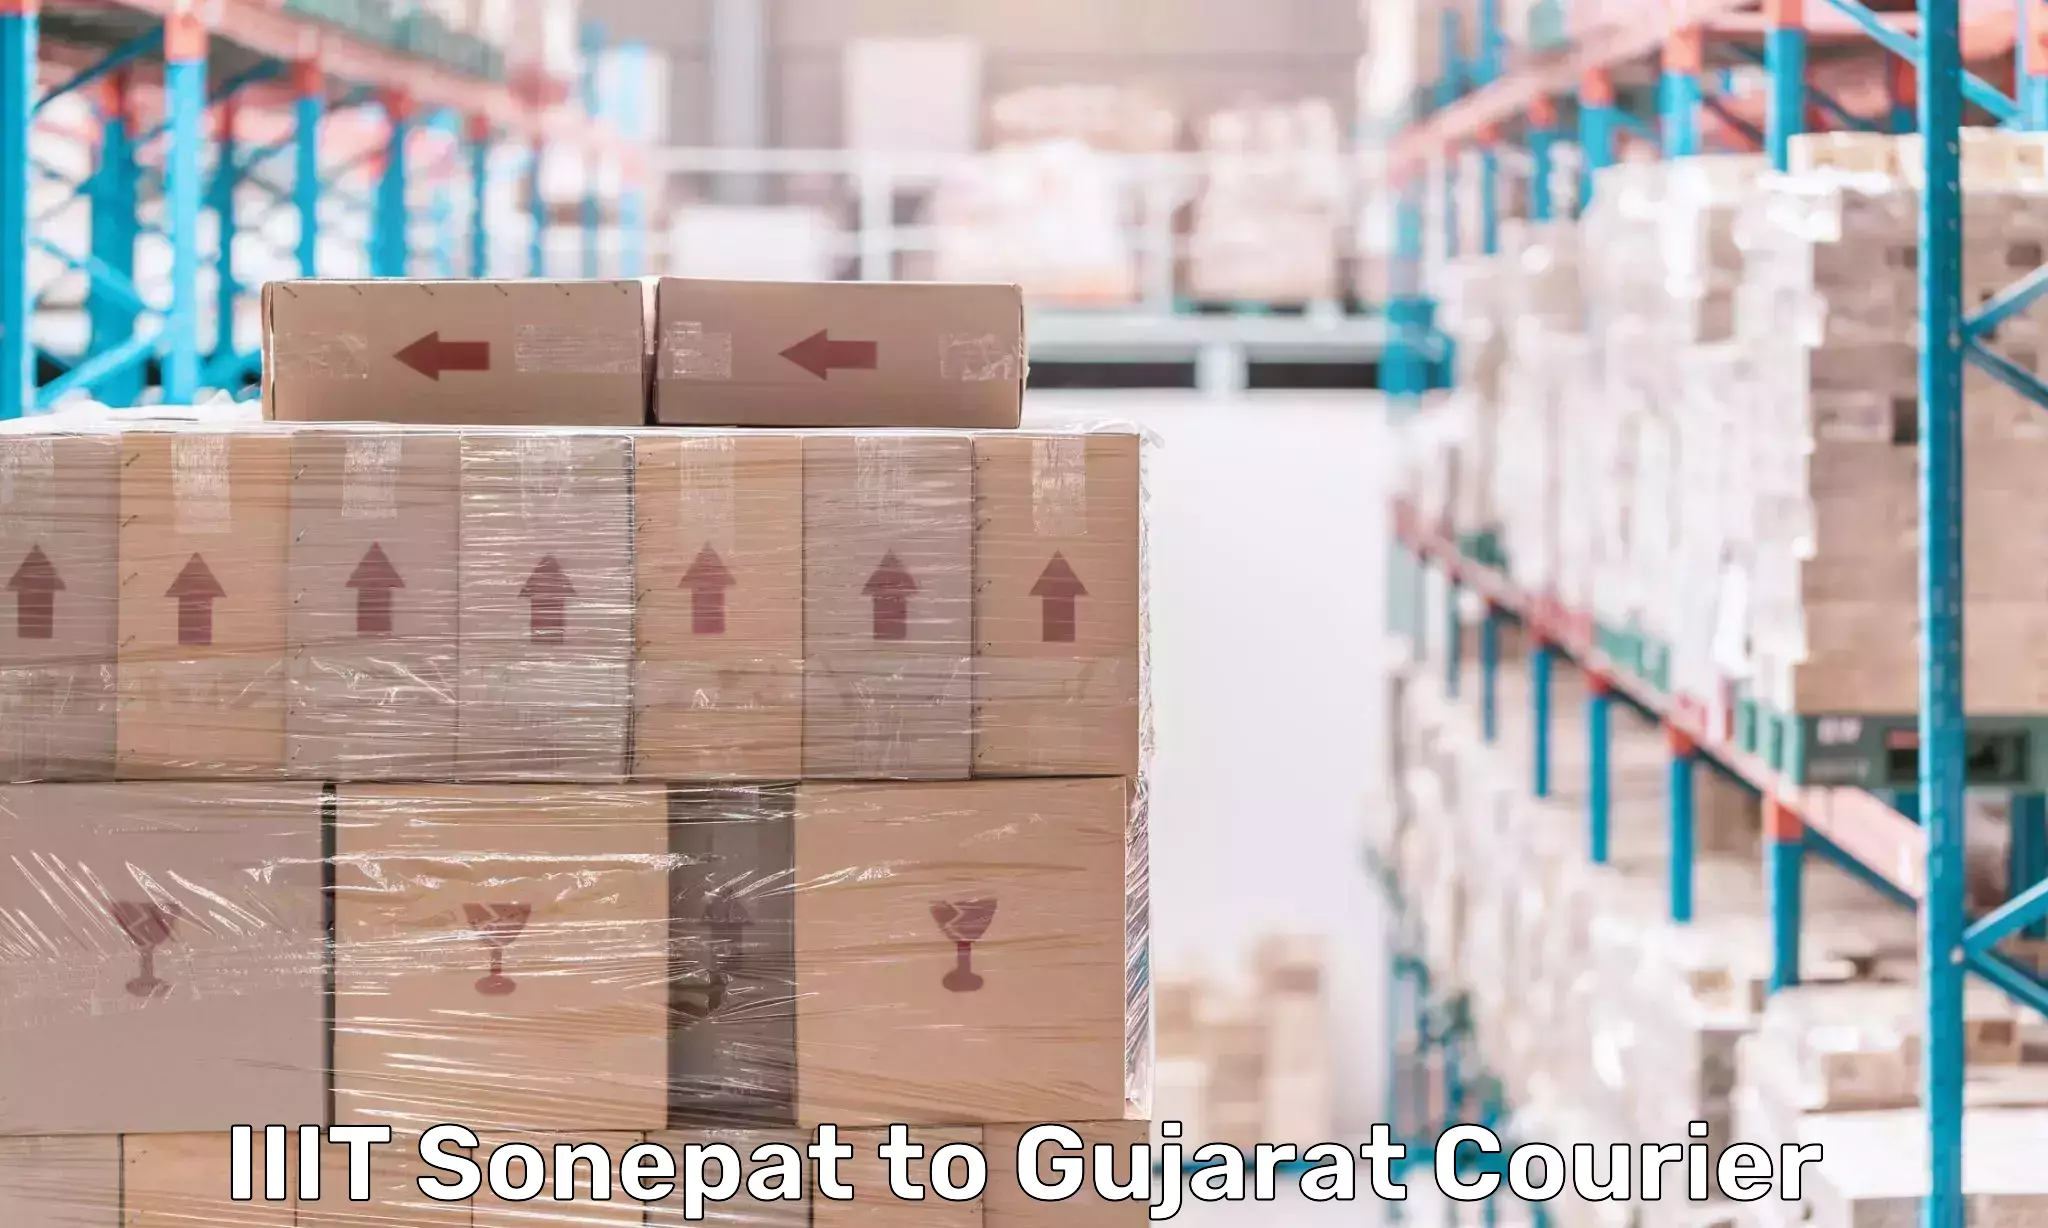 Courier service partnerships IIIT Sonepat to Vadnagar